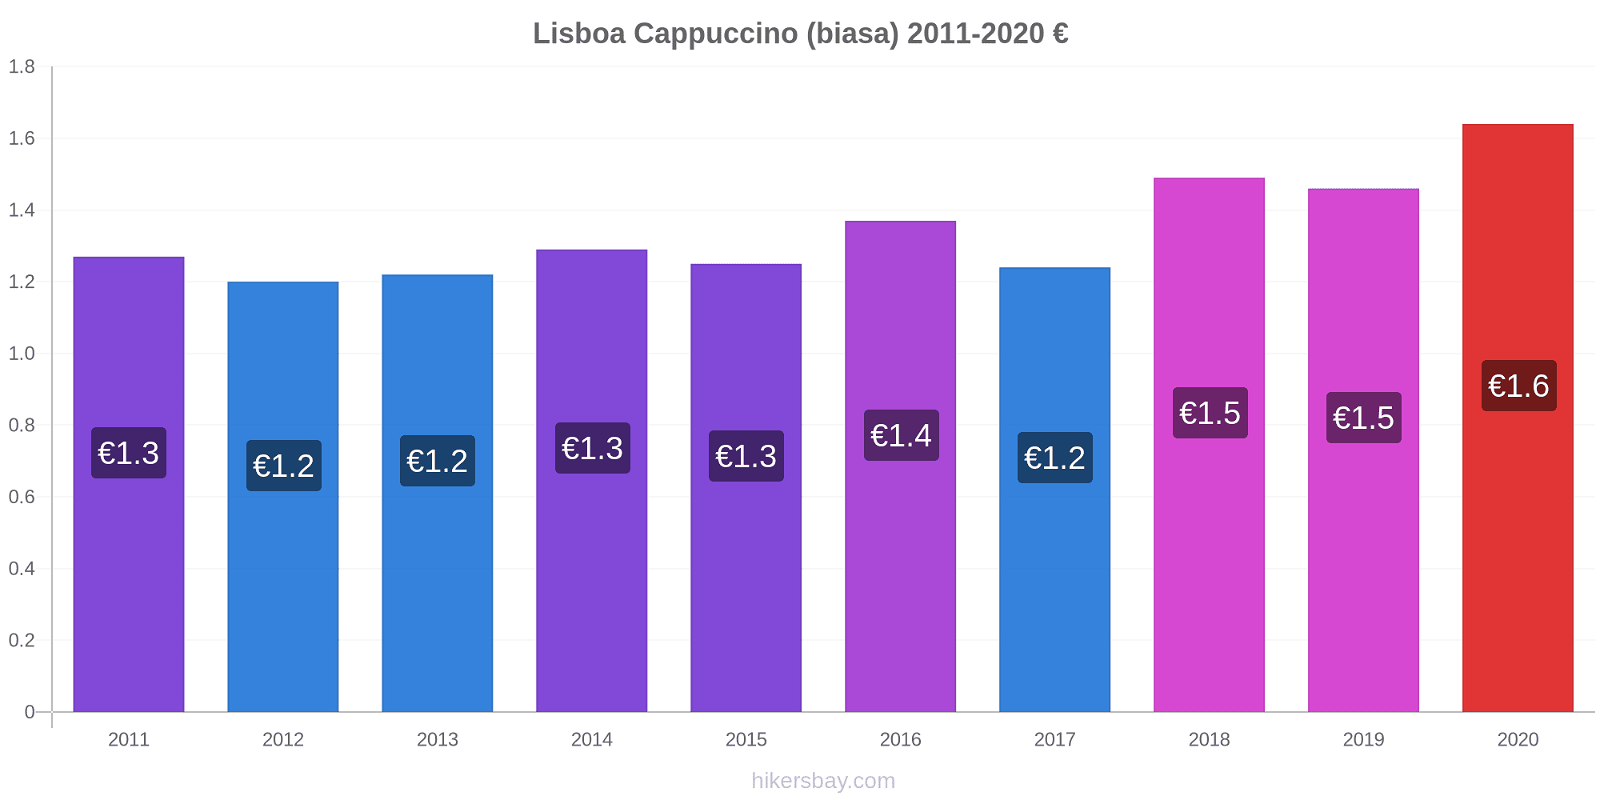 Lisboa perubahan harga Cappuccino (biasa) hikersbay.com